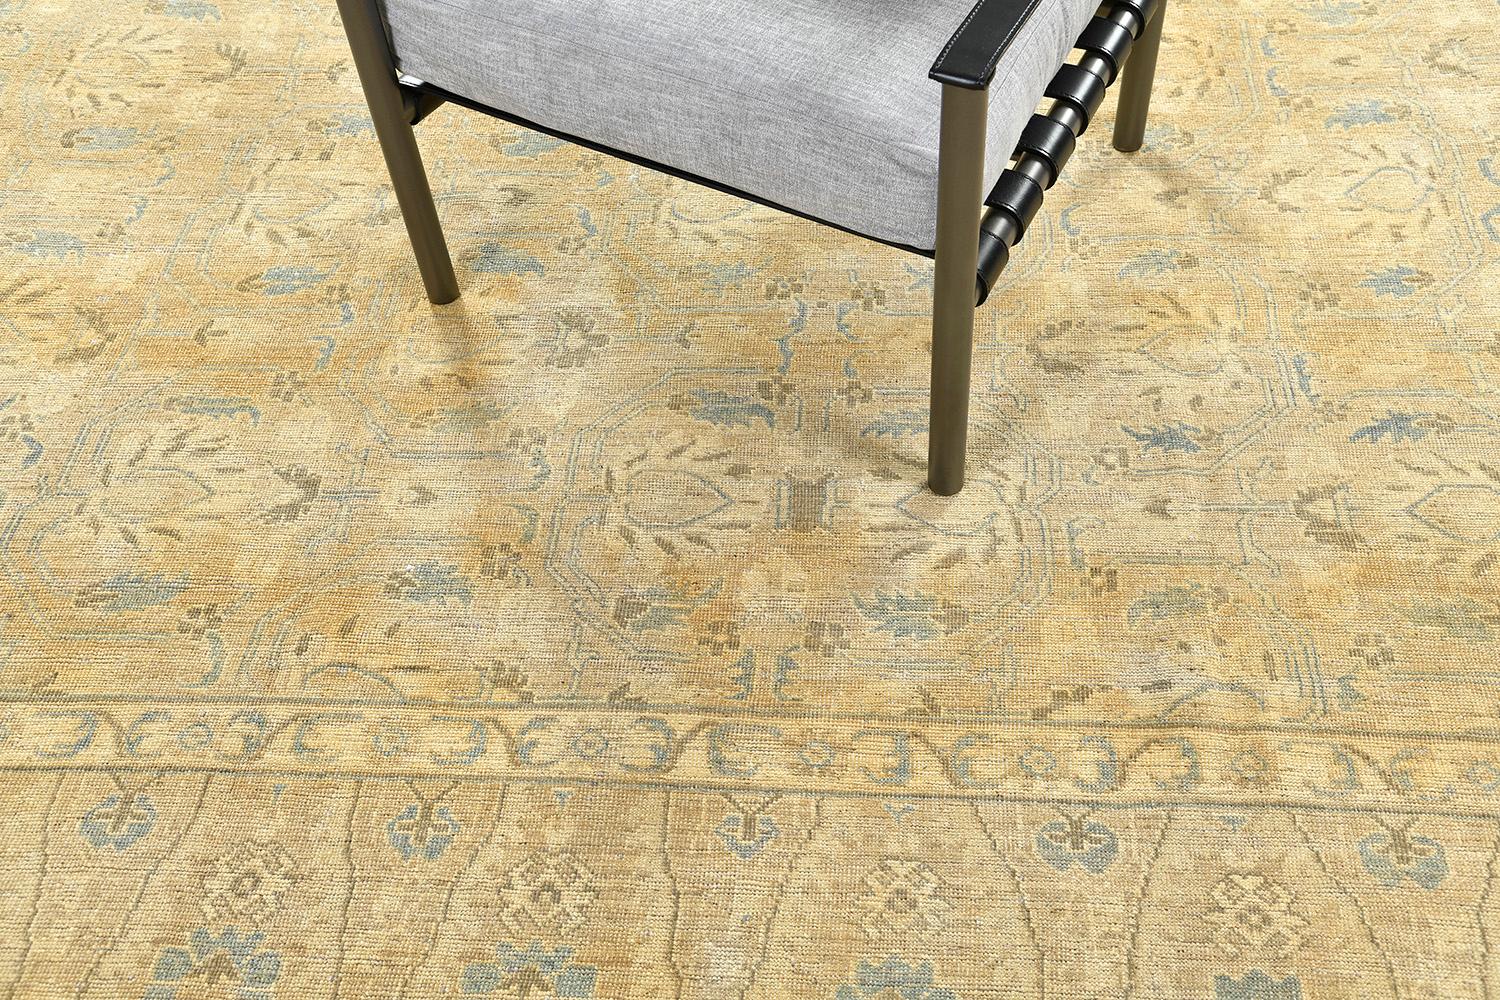 Ce tapis Shawl Design est un tapis en laine tissé à la main qui présente un élégant motif floral, des motifs géométriques et des embellissements grandioses, sur des contours dorés et gris sauge. Un motif complexe est bien coordonné avec des bordures